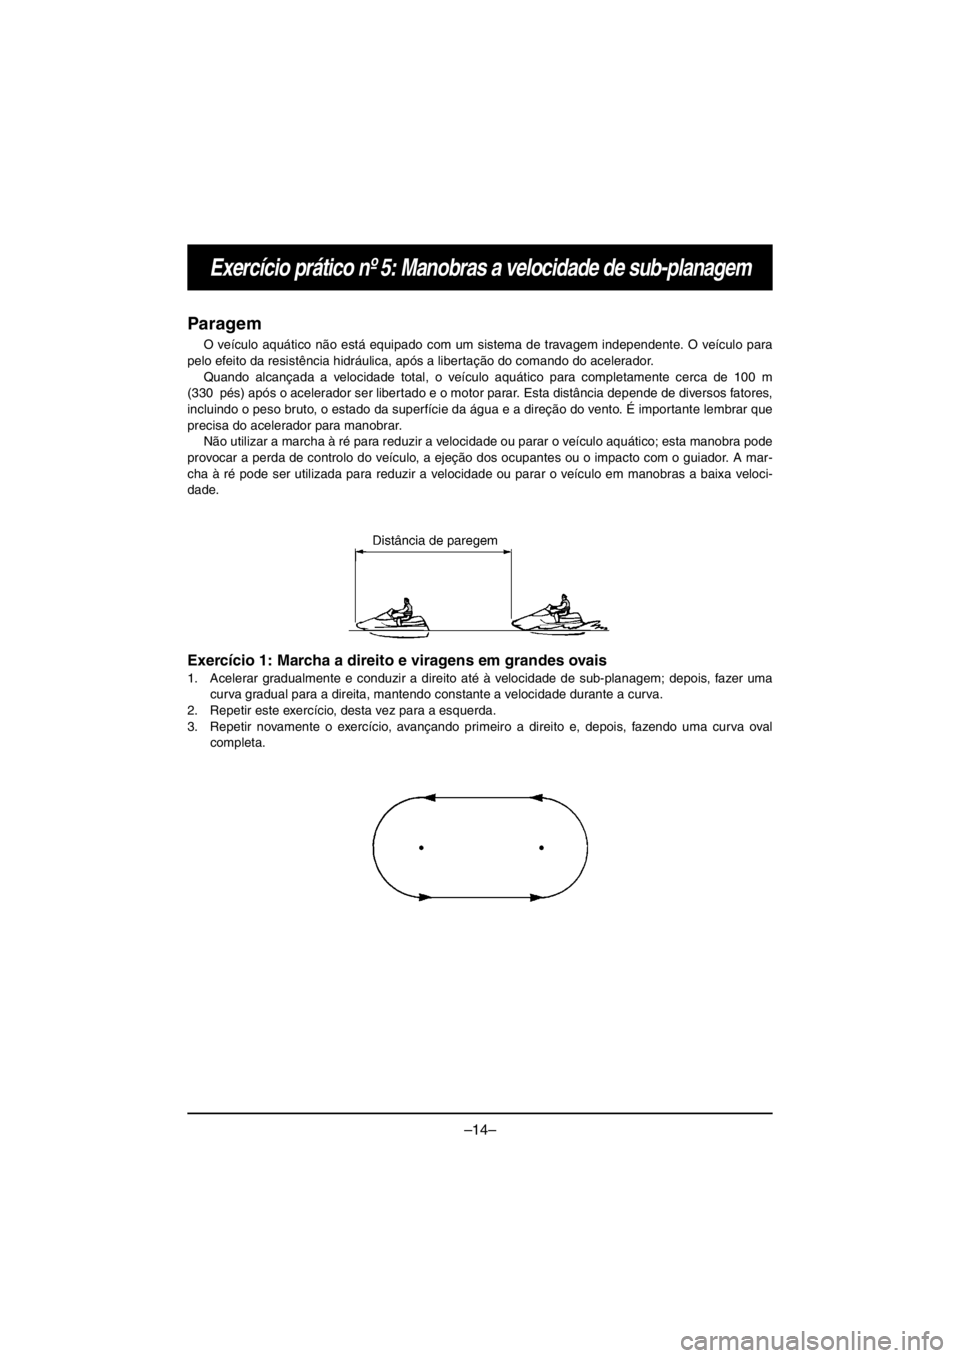 YAMAHA V1 2016  Notices Demploi (in French) –14–
Exercício prático nº 5: Manobras a velocidade de sub-planagem
Paragem
O veículo aquático não está equipado com um sistema de travagem independente. O veículo para
pelo efeito da resis